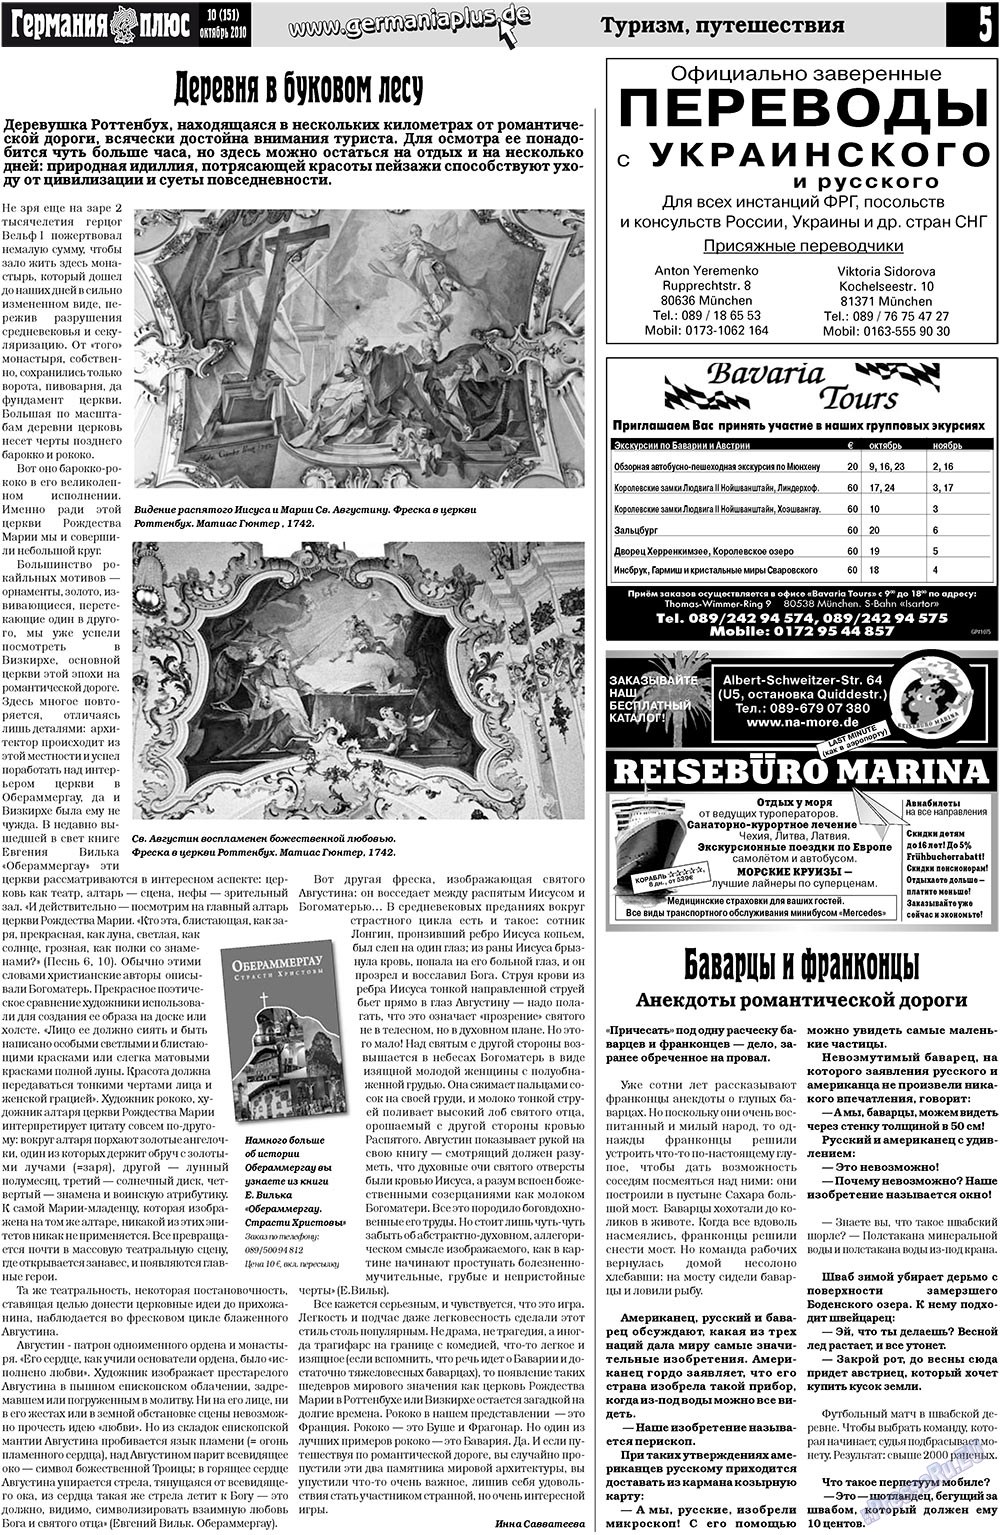 Германия плюс, газета. 2010 №10 стр.5